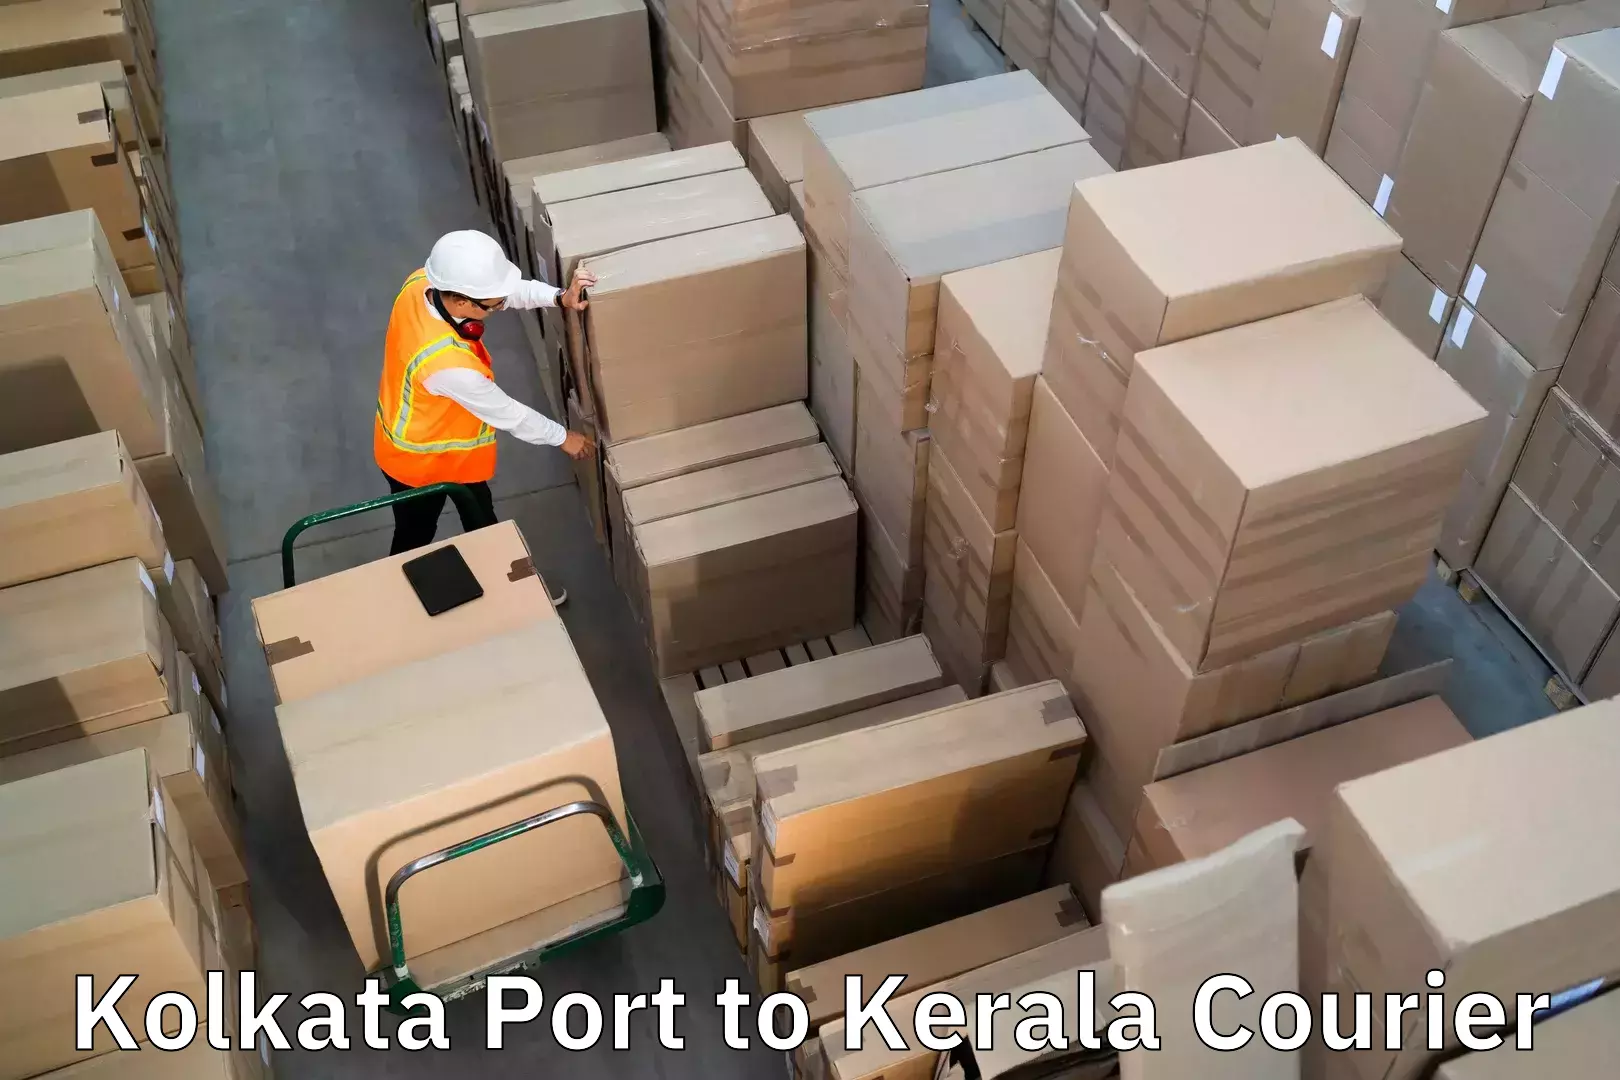 Baggage transport services Kolkata Port to Kerala University Thiruvananthapuram